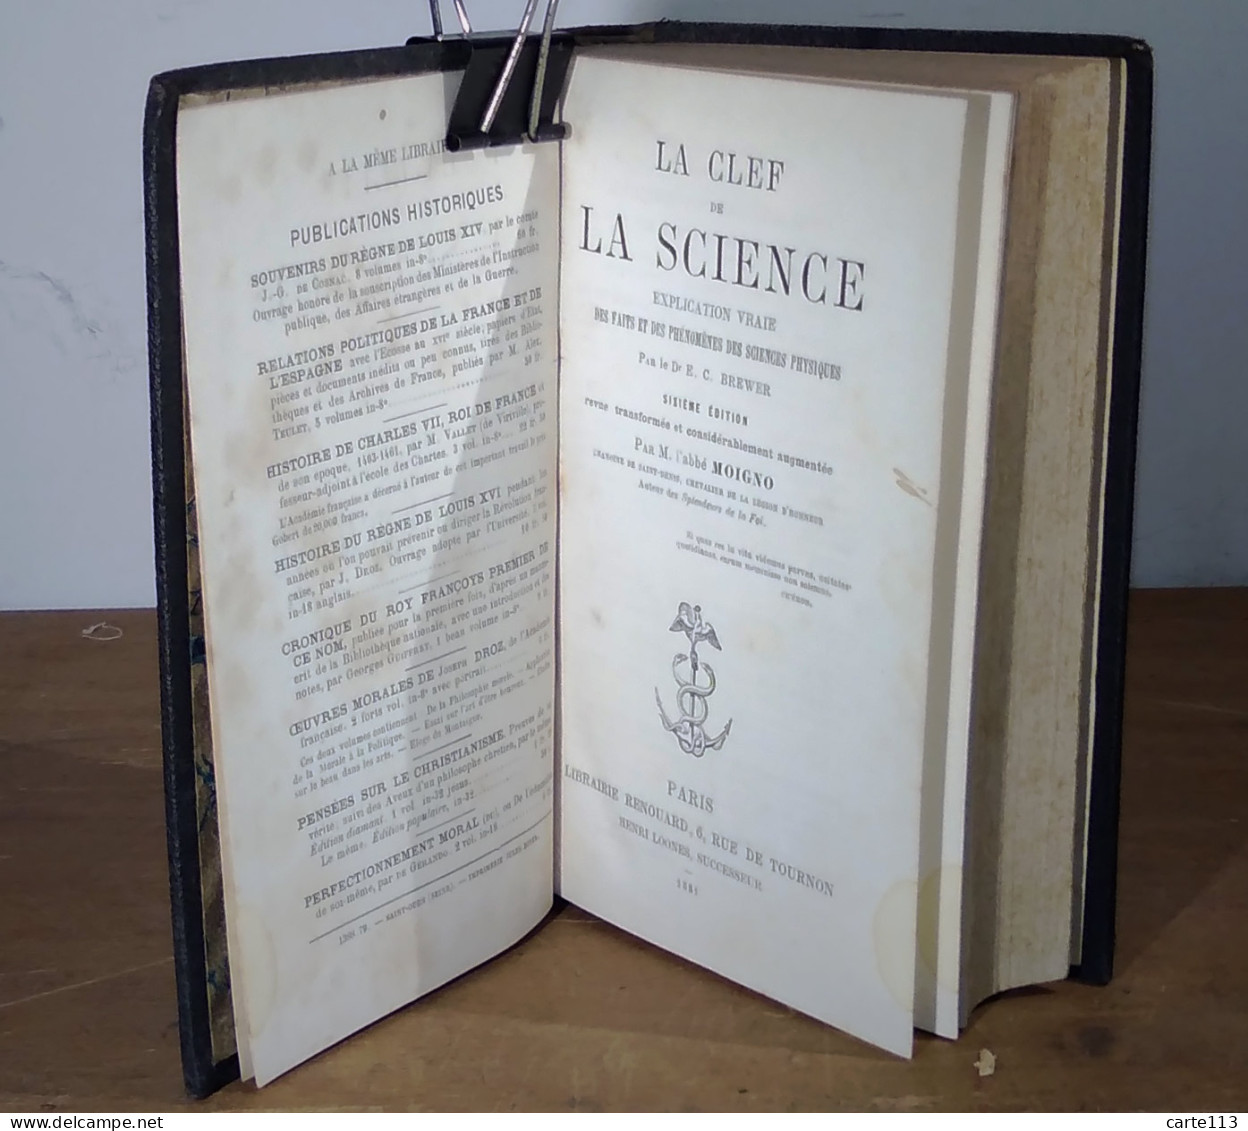 BREWER Ebenezer Cobham - LA CLEF DE LA SCIENCE - EXPLICATION VRAIE DES FAITS ET DES PHENOMENES - 1801-1900